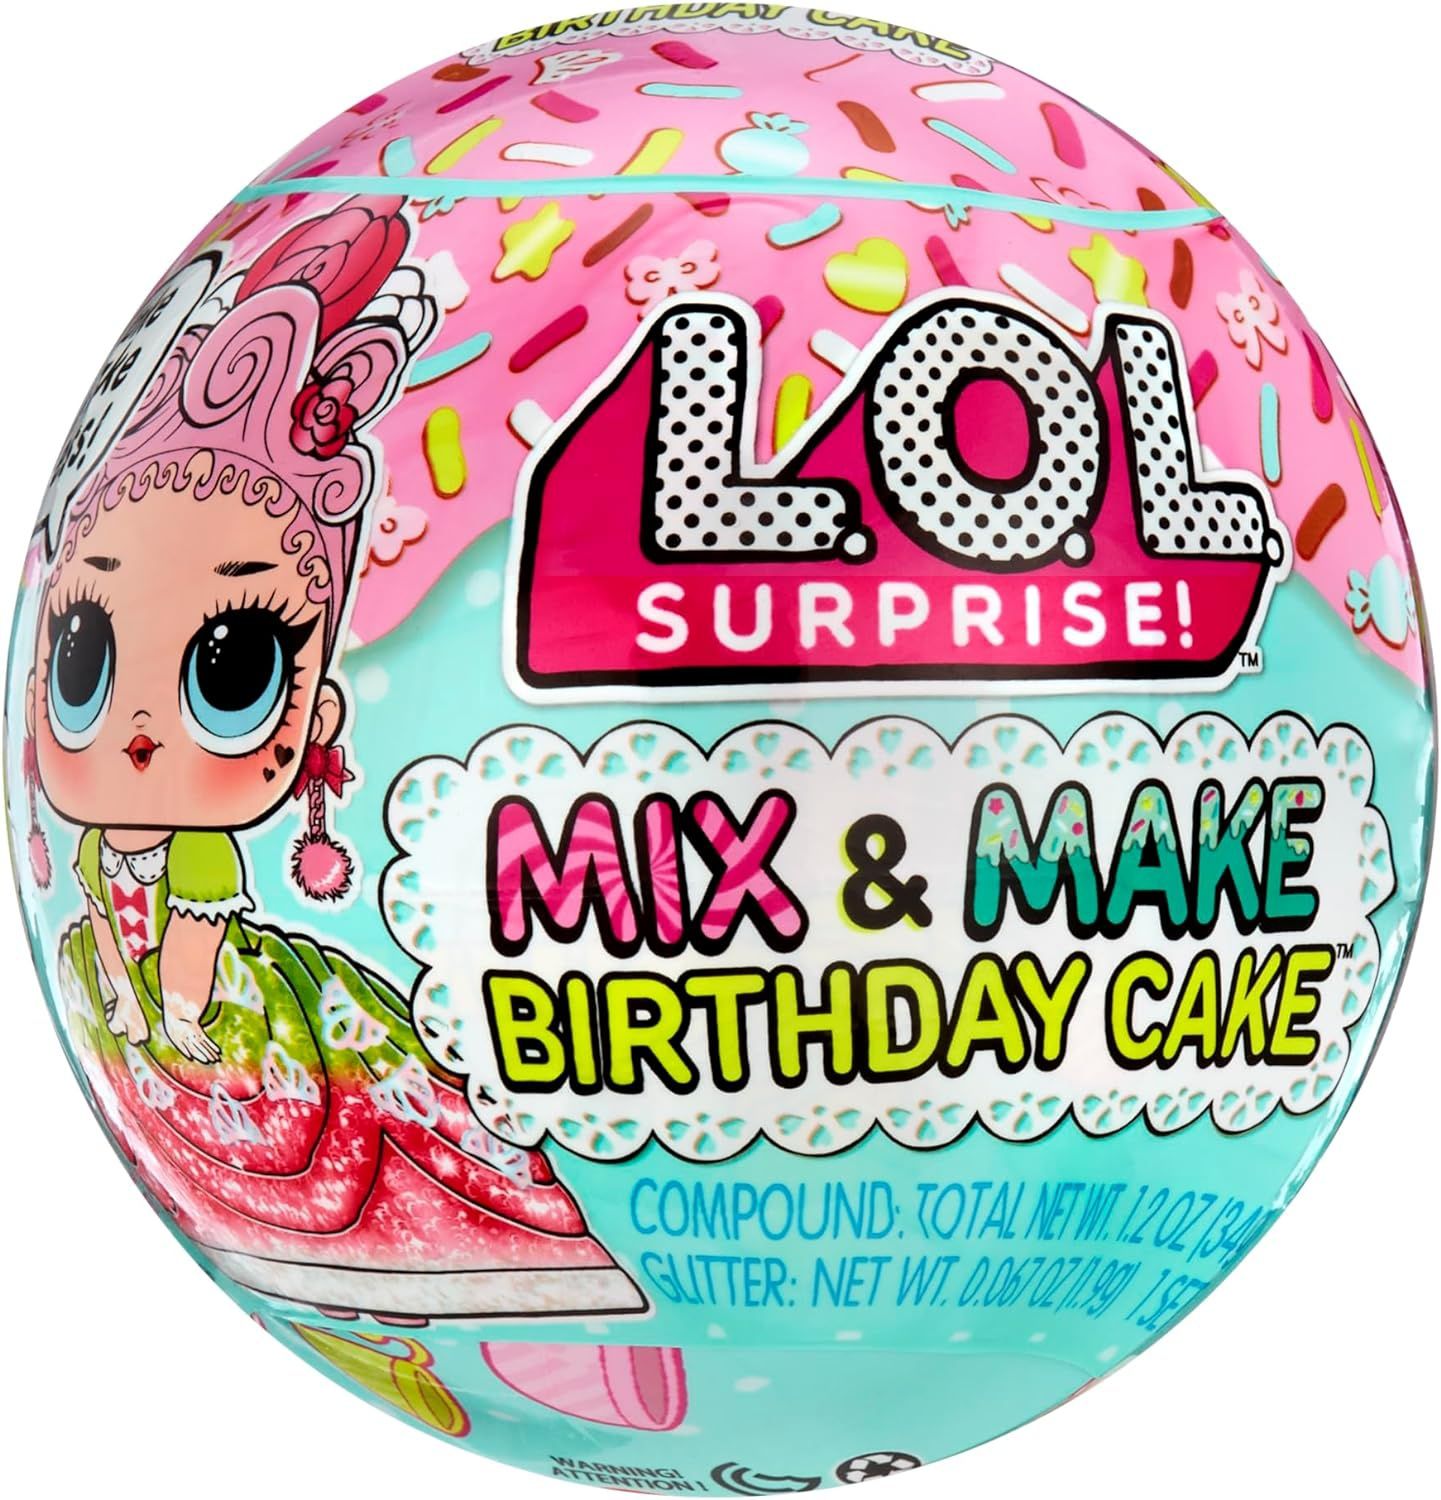 LOL Surprise birthday cake Mix & Make Торт на день рождения для малыше